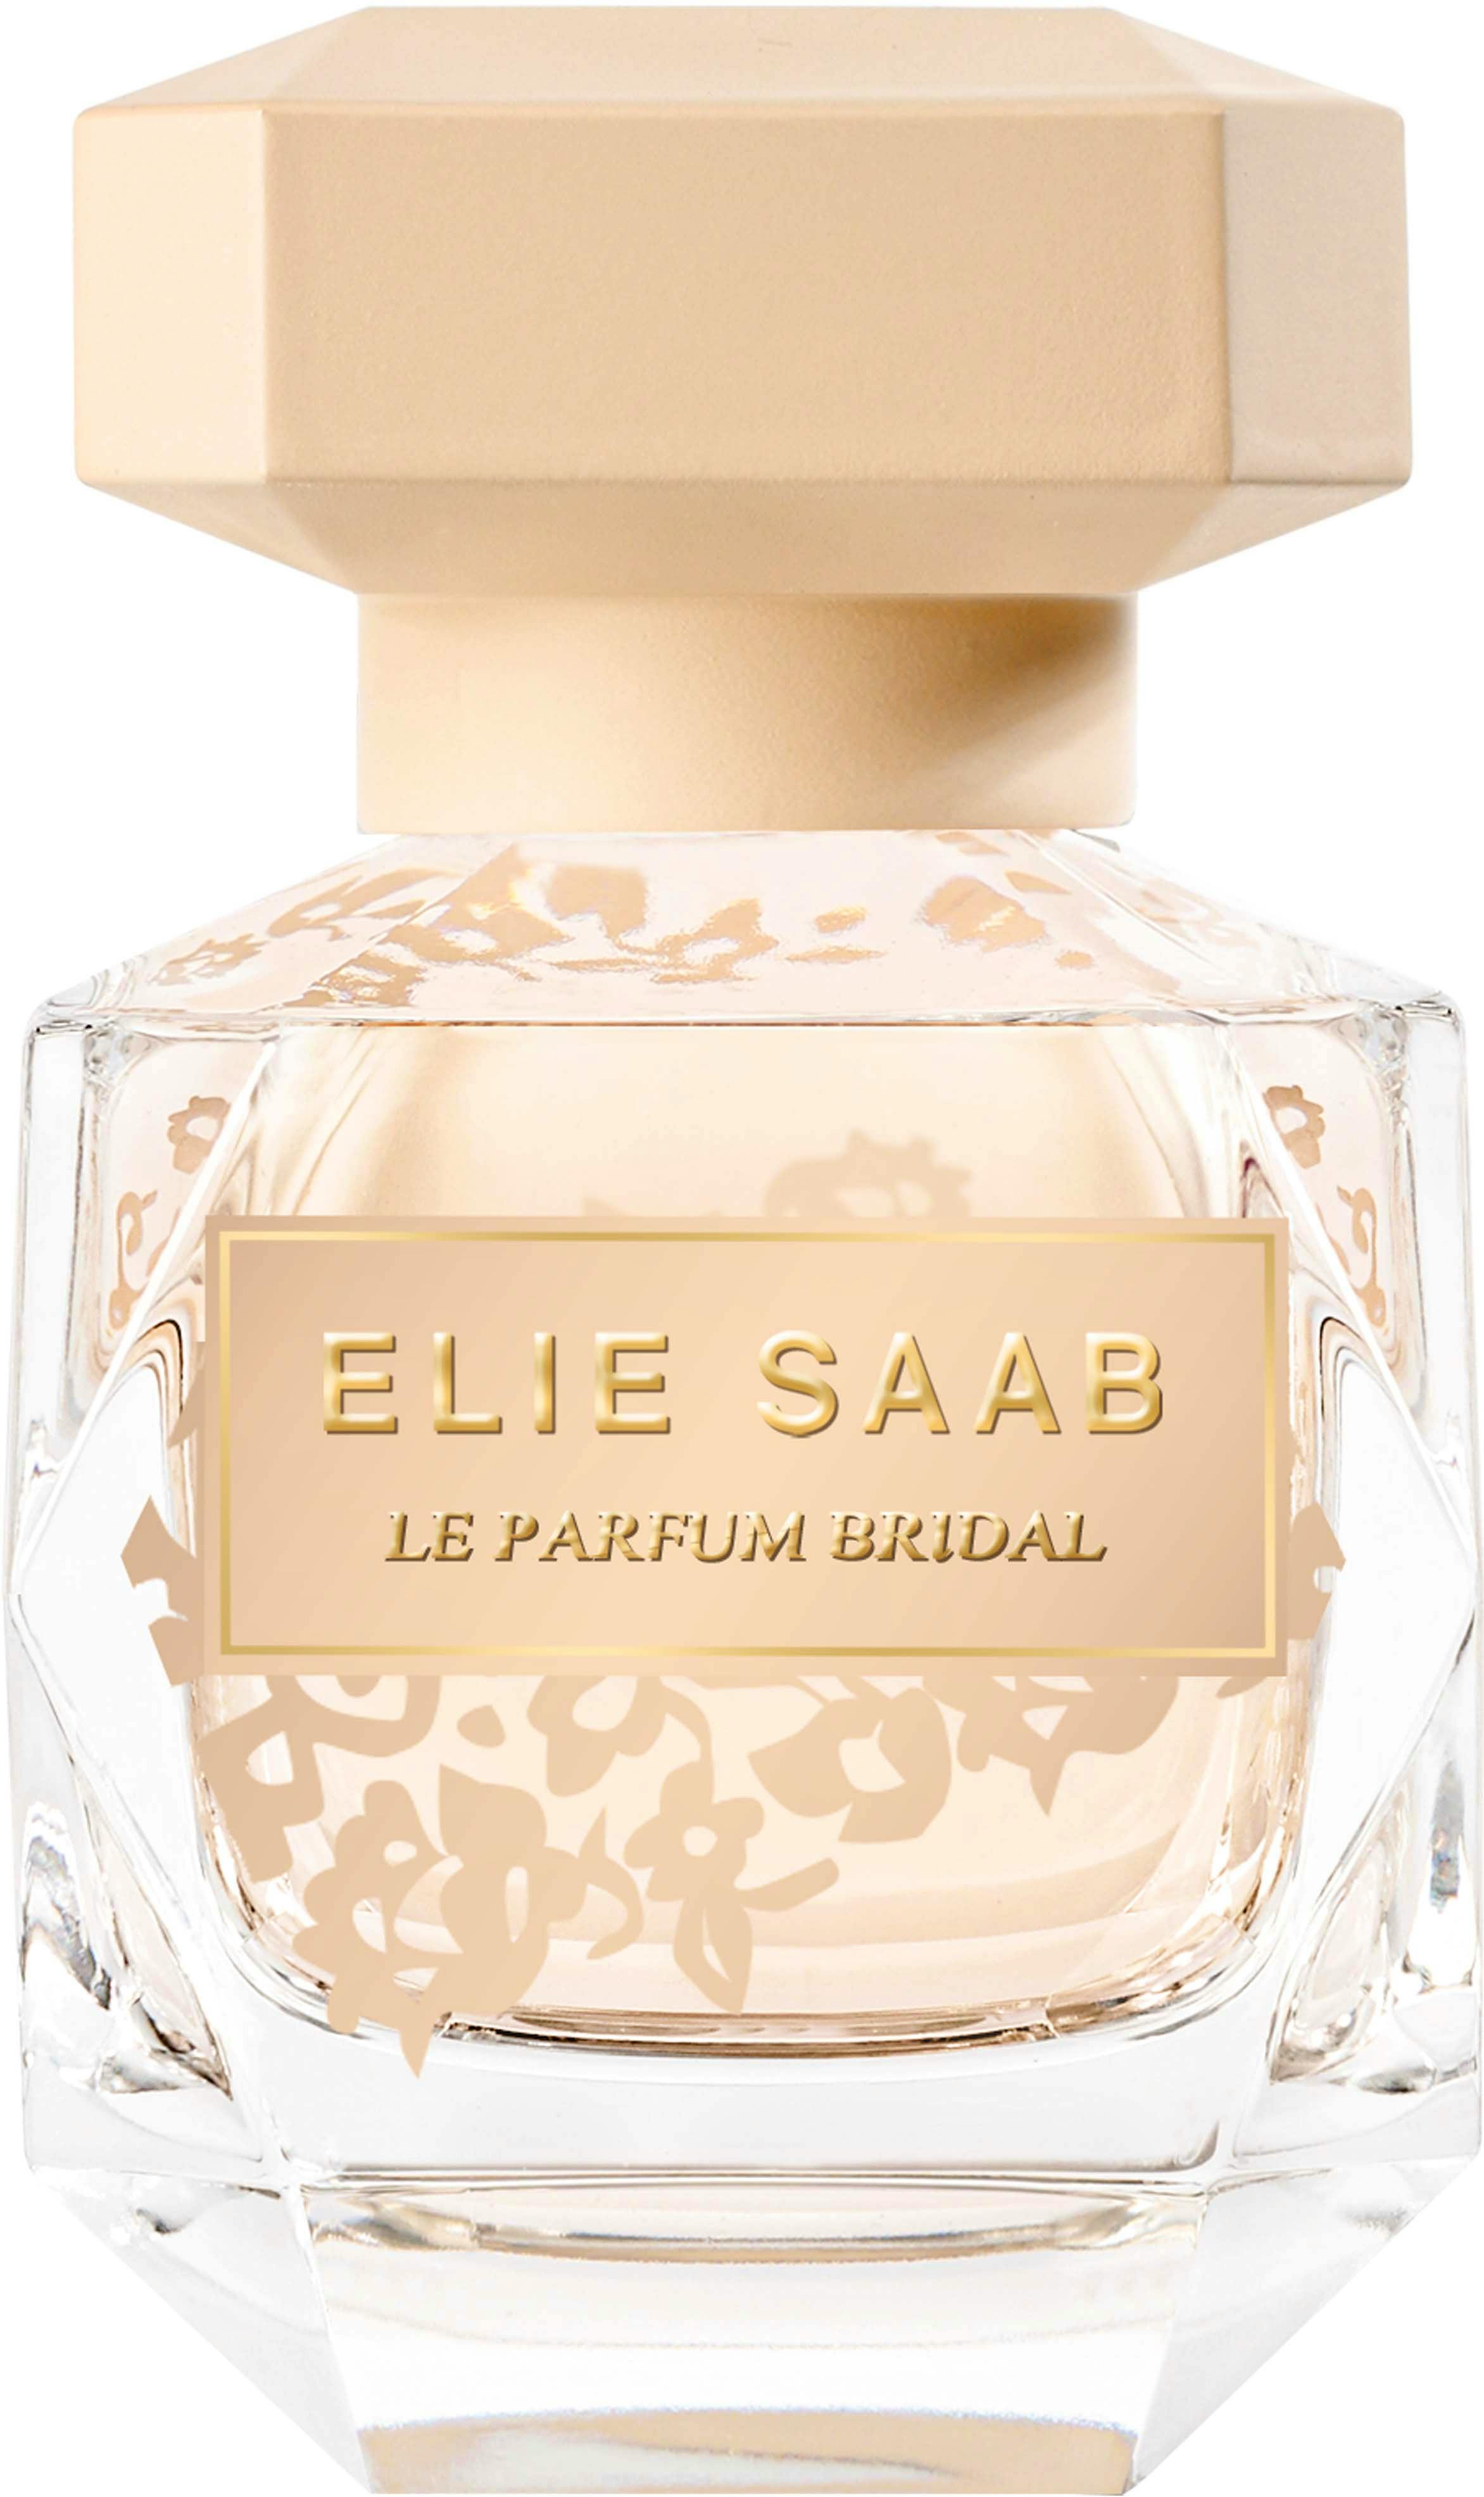 Elie Saab Le Parfum Bridal EDP 30 ml - 339.95 kr